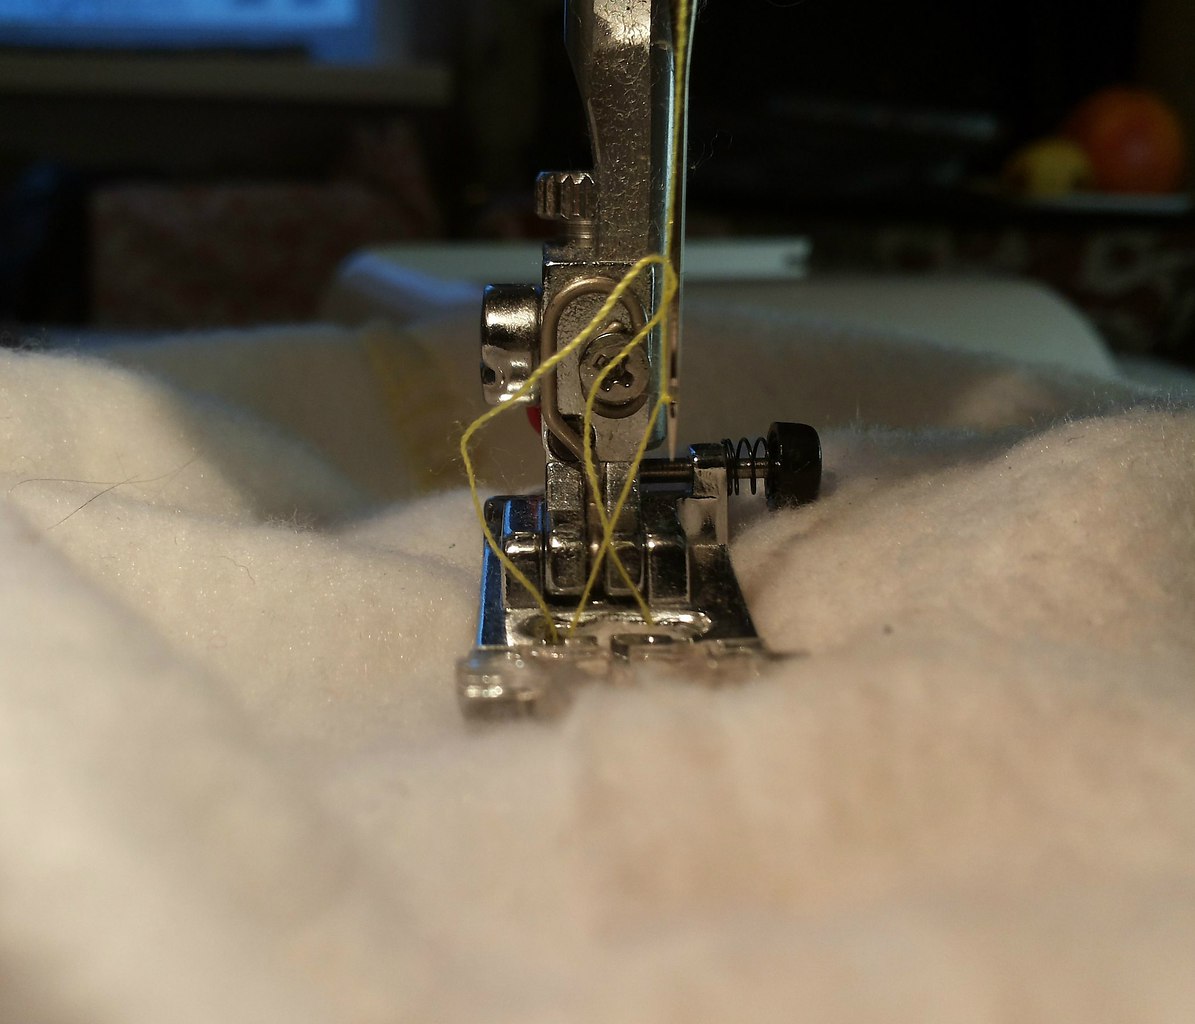 Почему путается нитка в швейной машинке